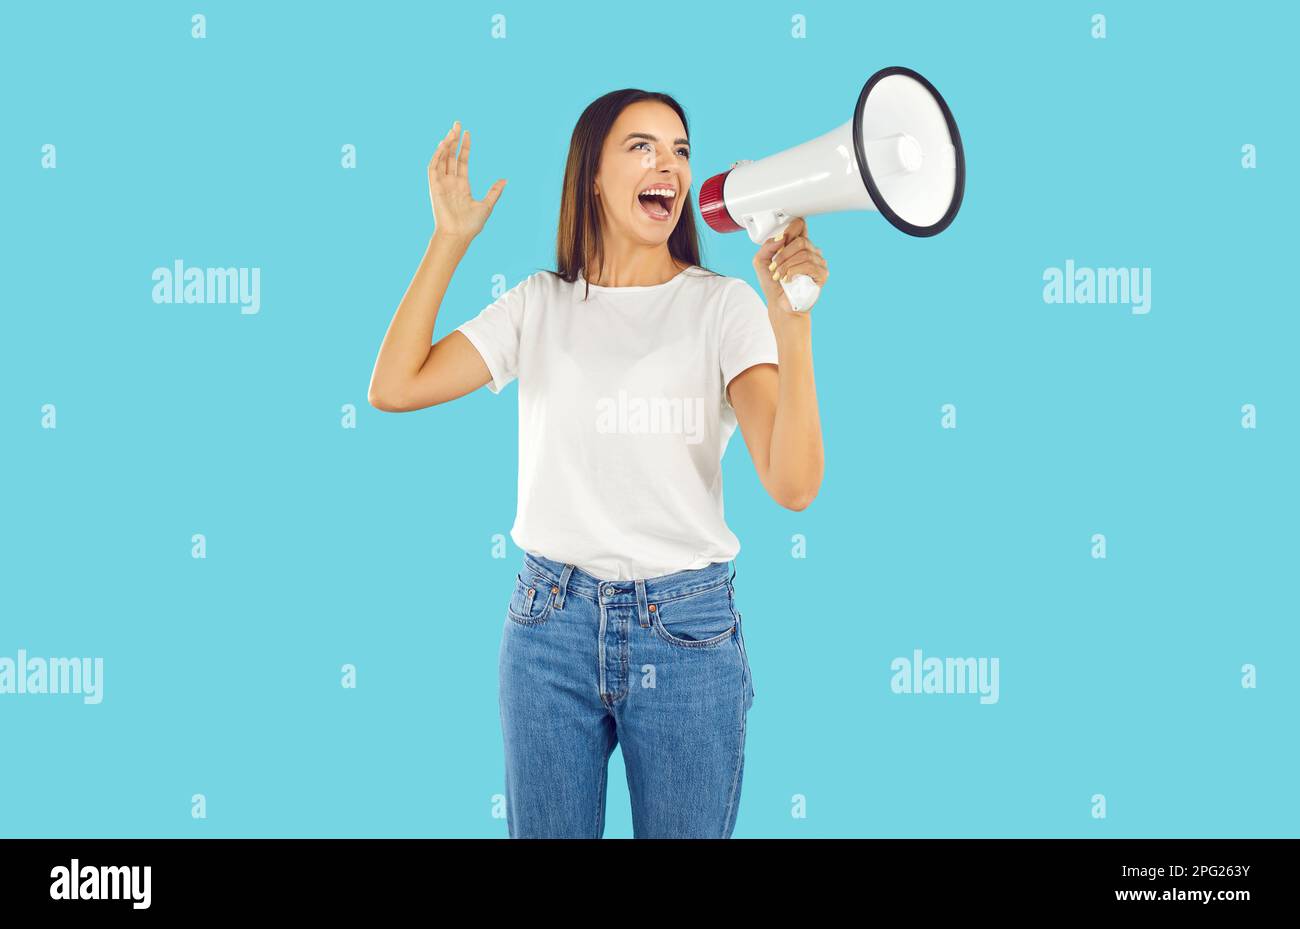 Eine Frau in T-Shirt und Jeans, die durch das Megafon schreit, um unsere Aufmerksamkeit auf etwas zu lenken Stockfoto